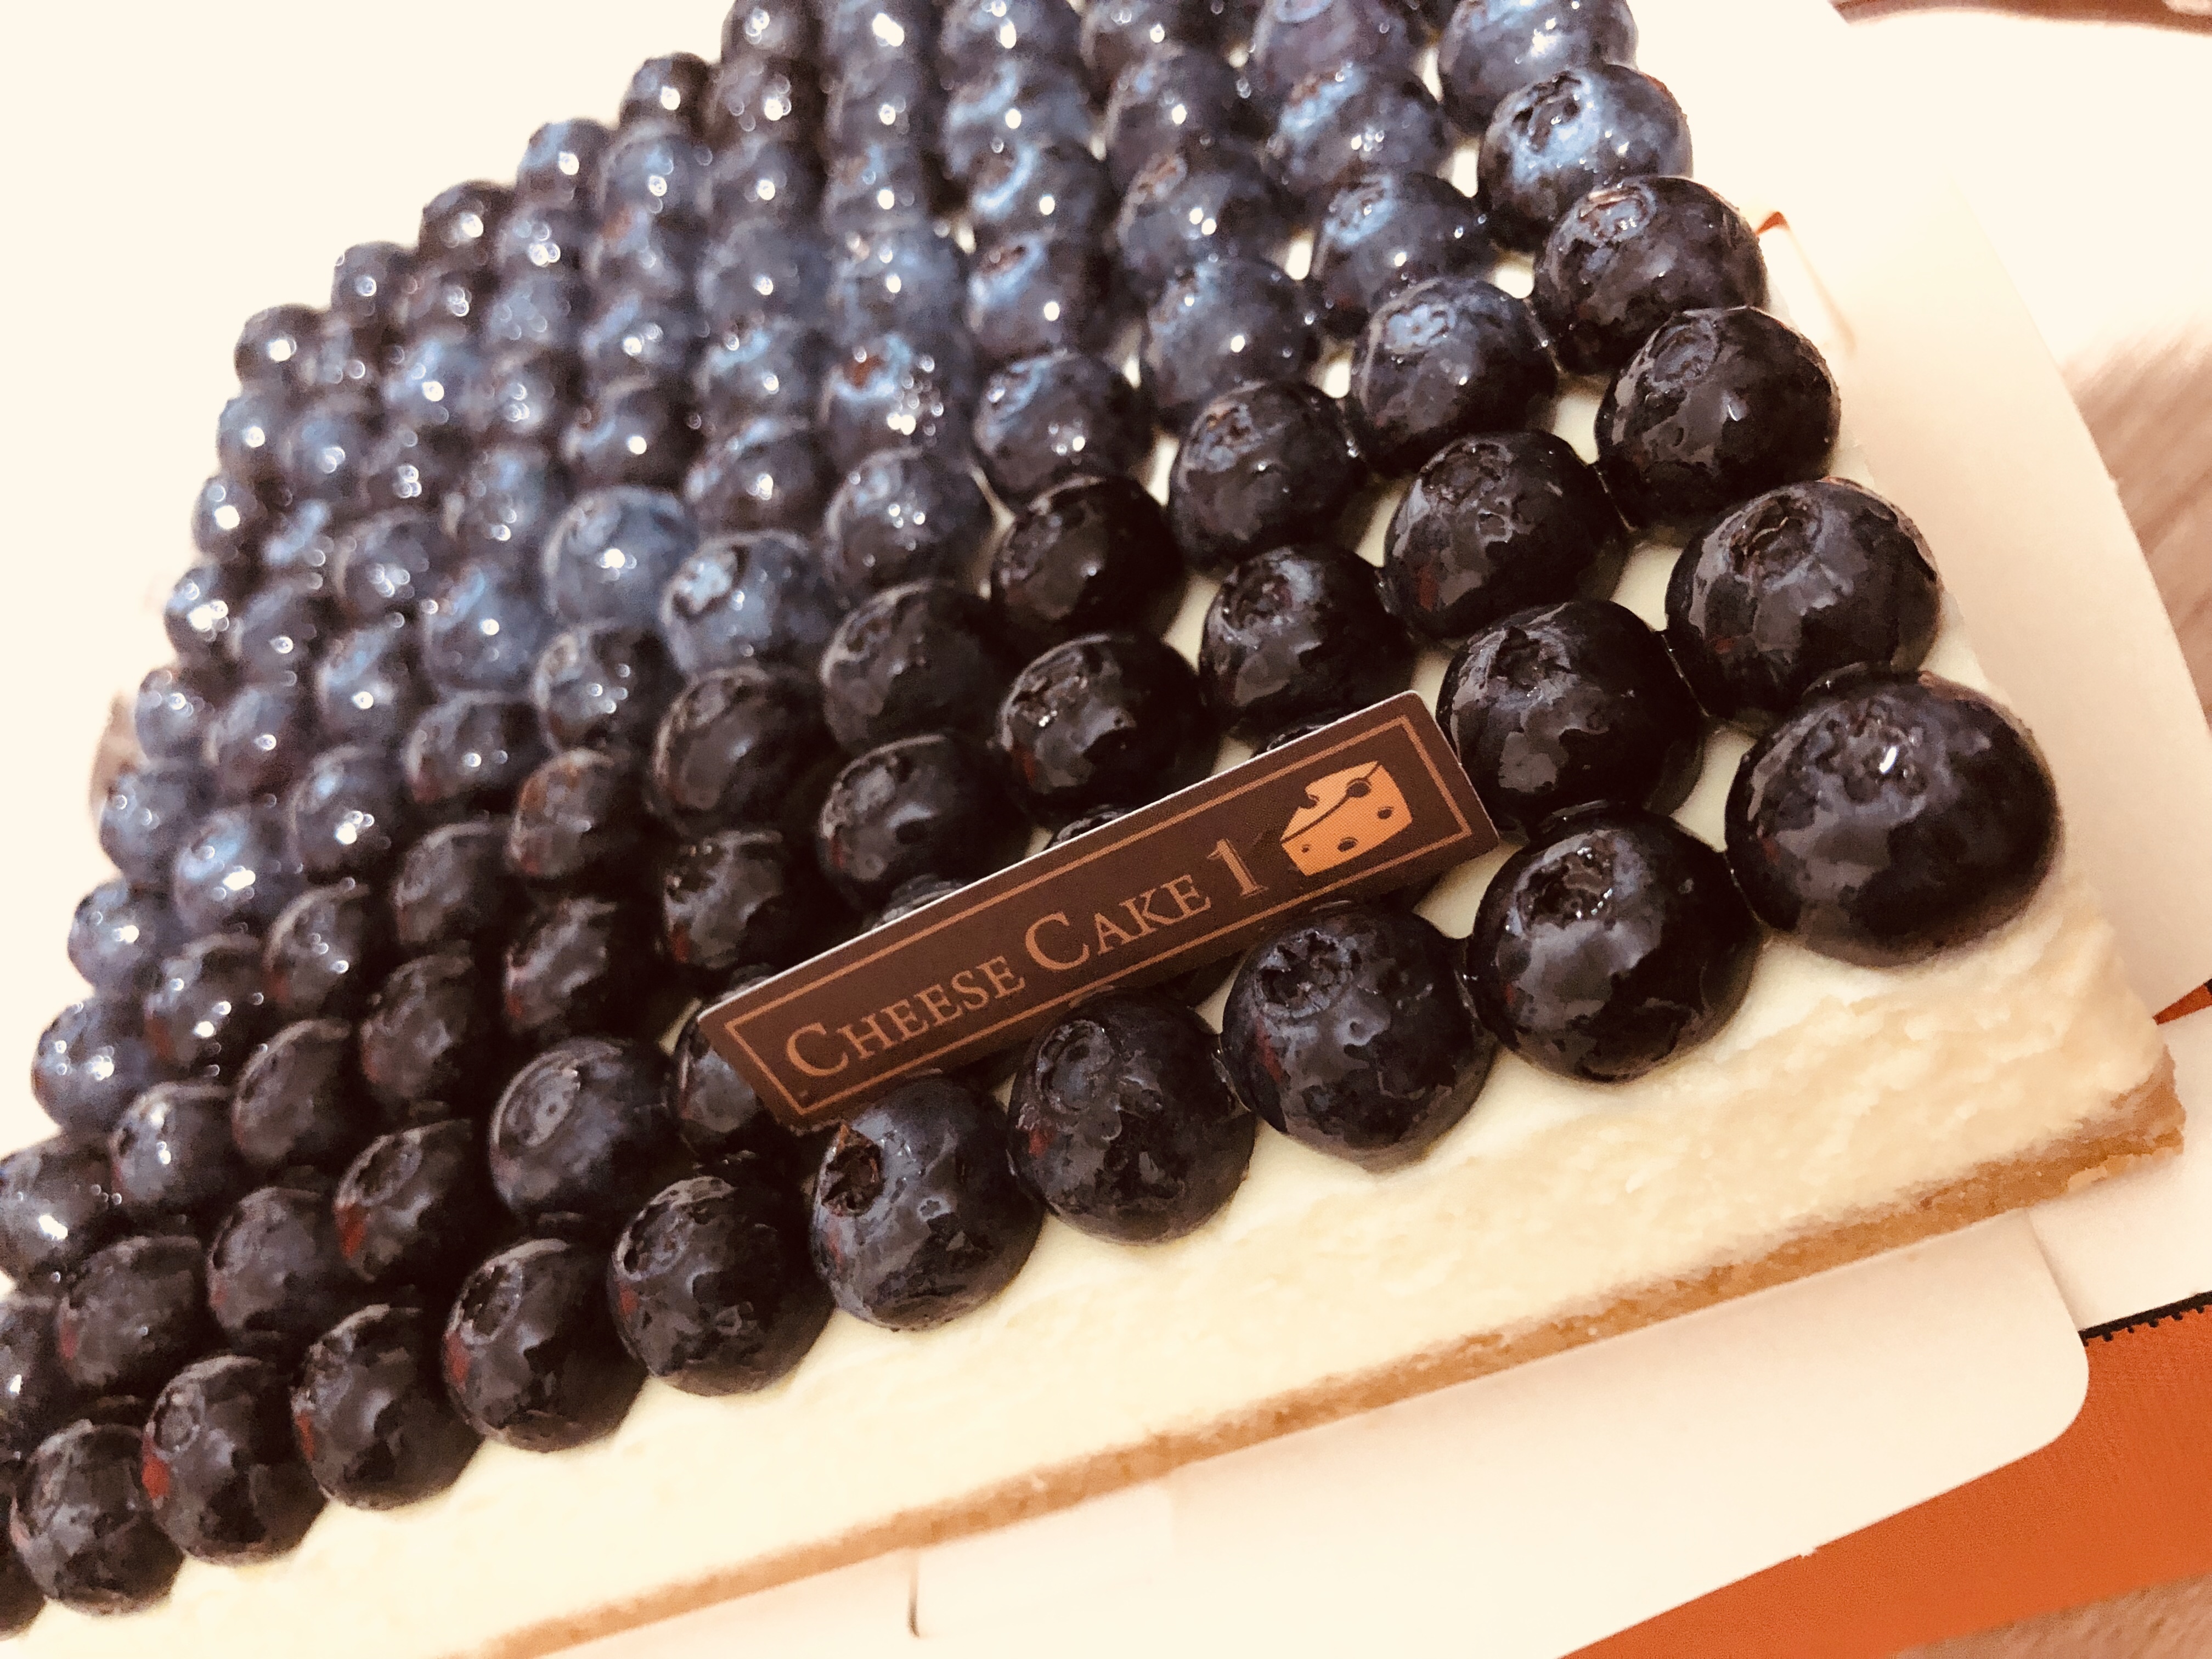 img 9271 - cheesecake1, 乳酪蛋糕, 團購推薦, 精品蛋糕, 藍莓乳酪蛋糕, 起司蛋糕, 起司蛋糕界的愛瑪仕